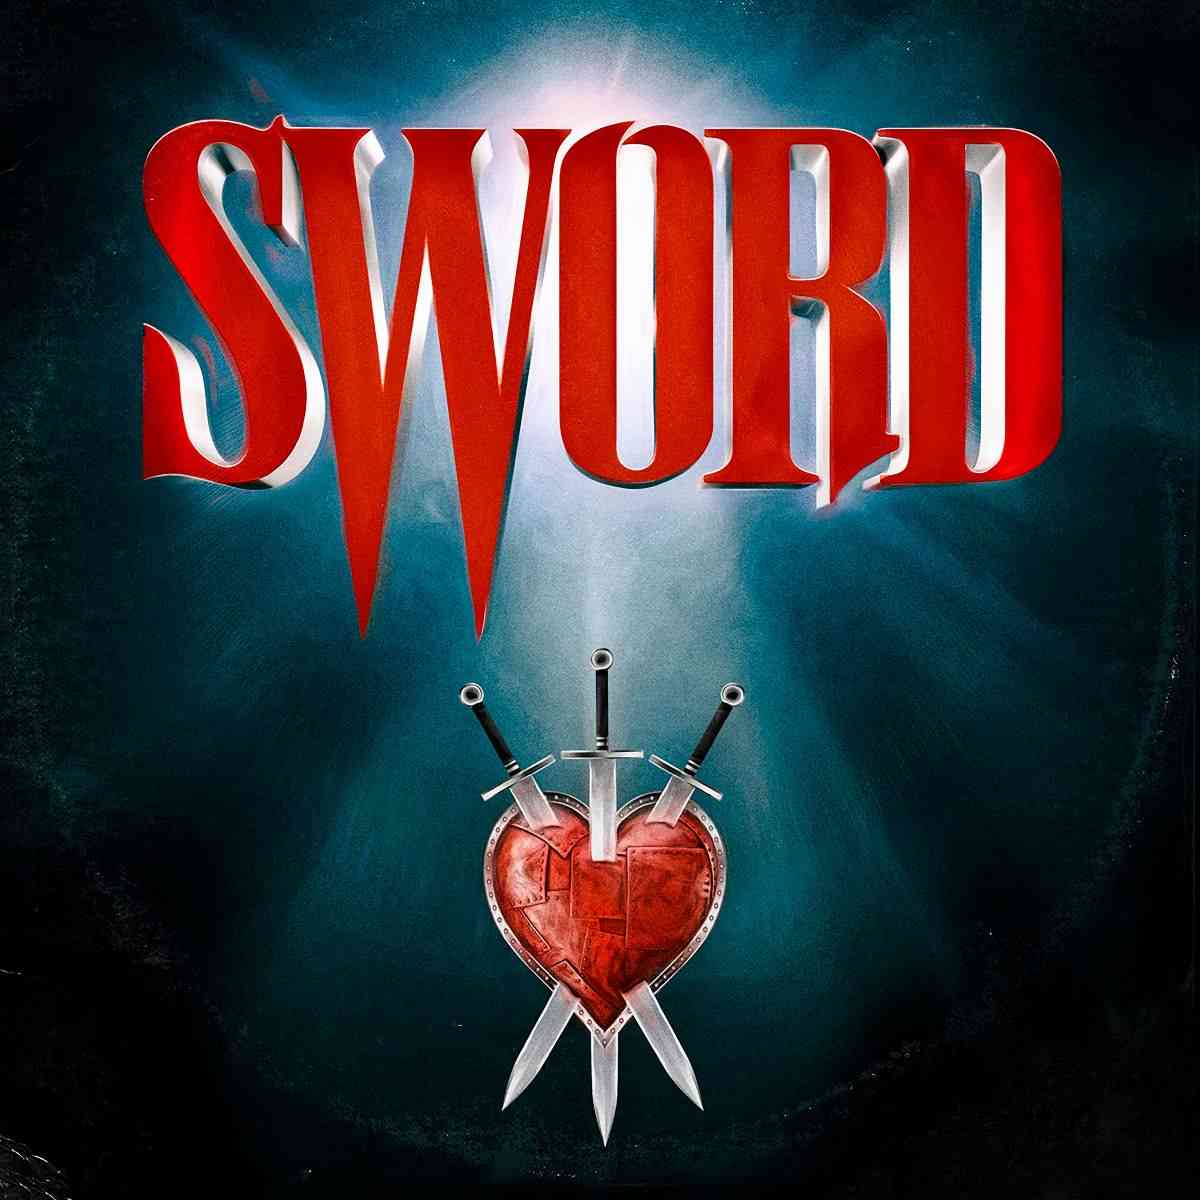 sword - III - album cover